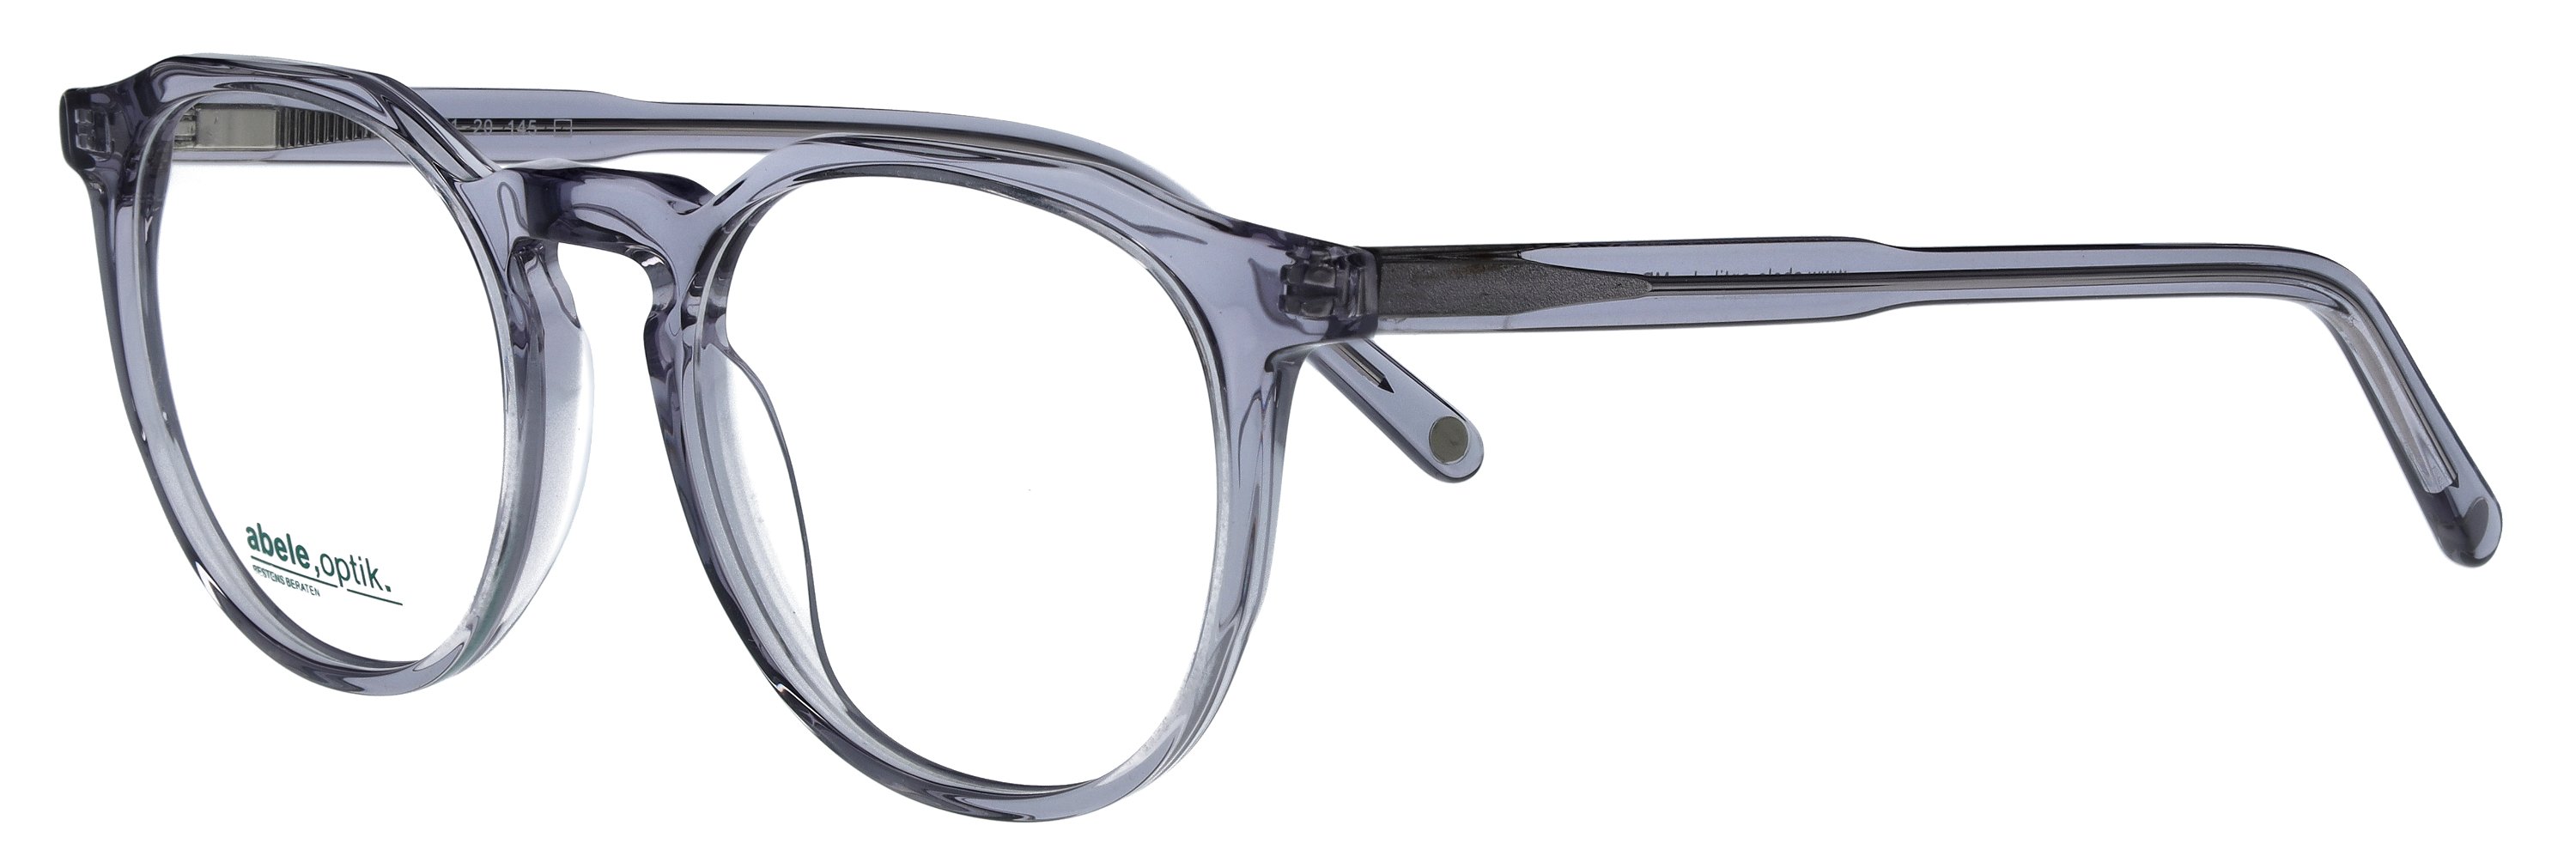 Das Bild zeigt die Korrektionsbrille 148192 von der Marke Abele Optik in grau transparent.